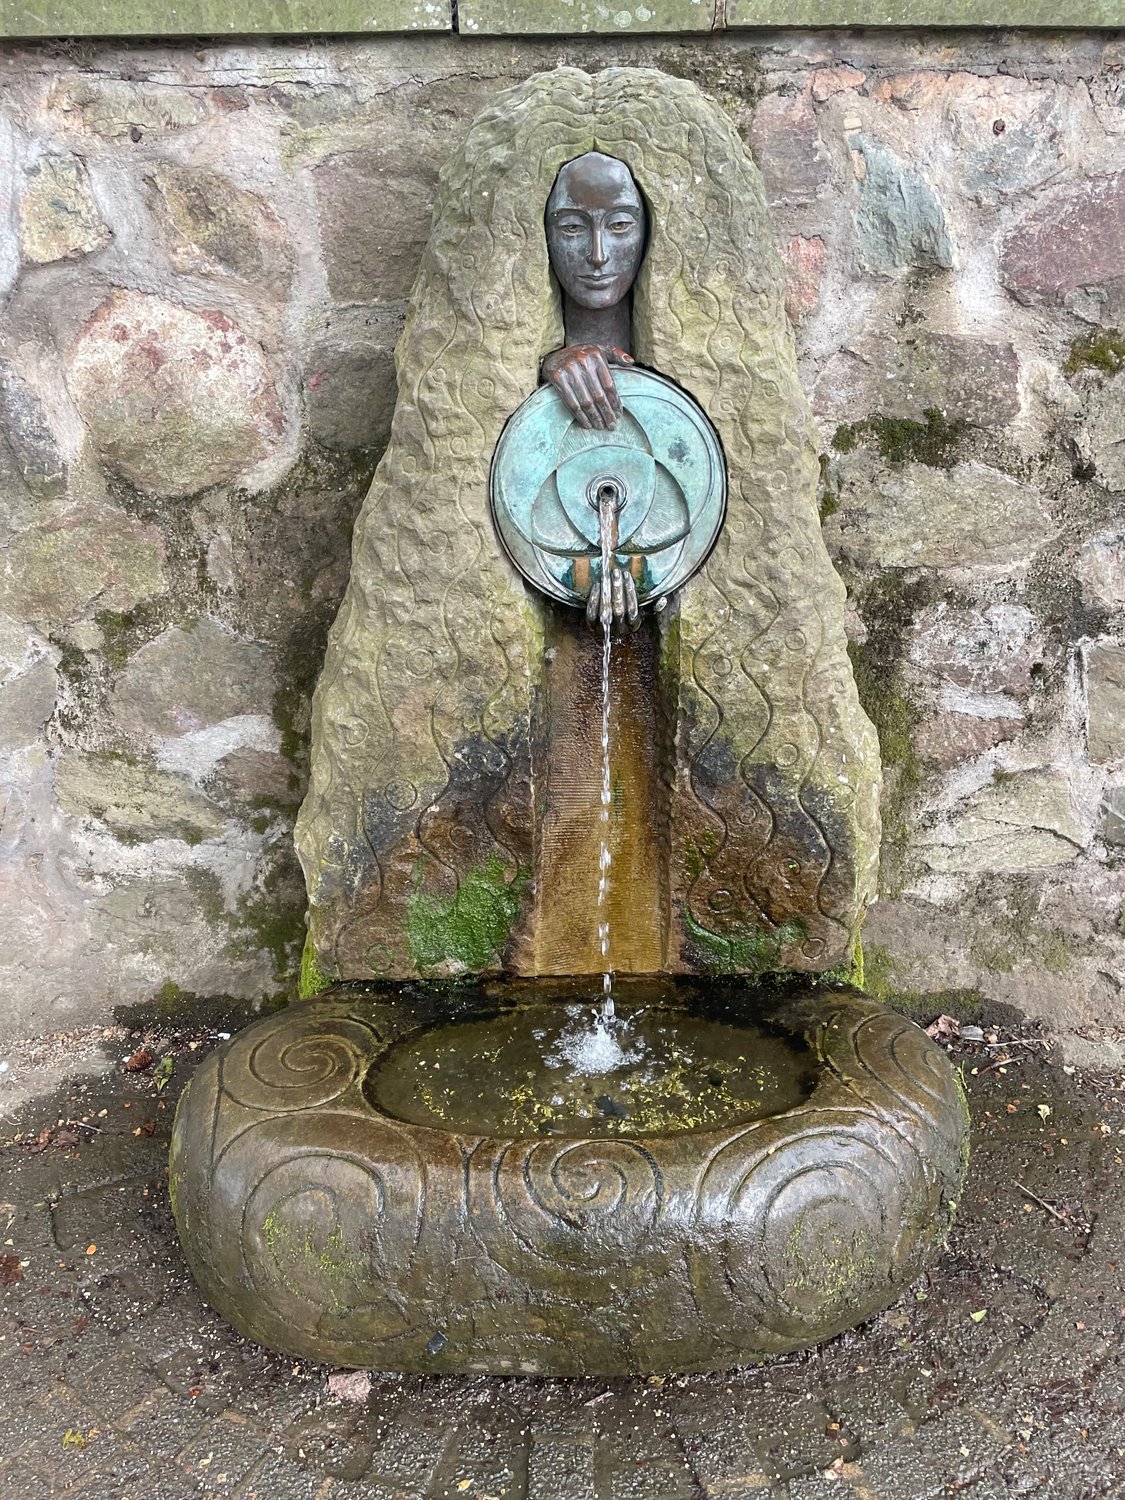 The fountain of Malvhina in Great Malvern.